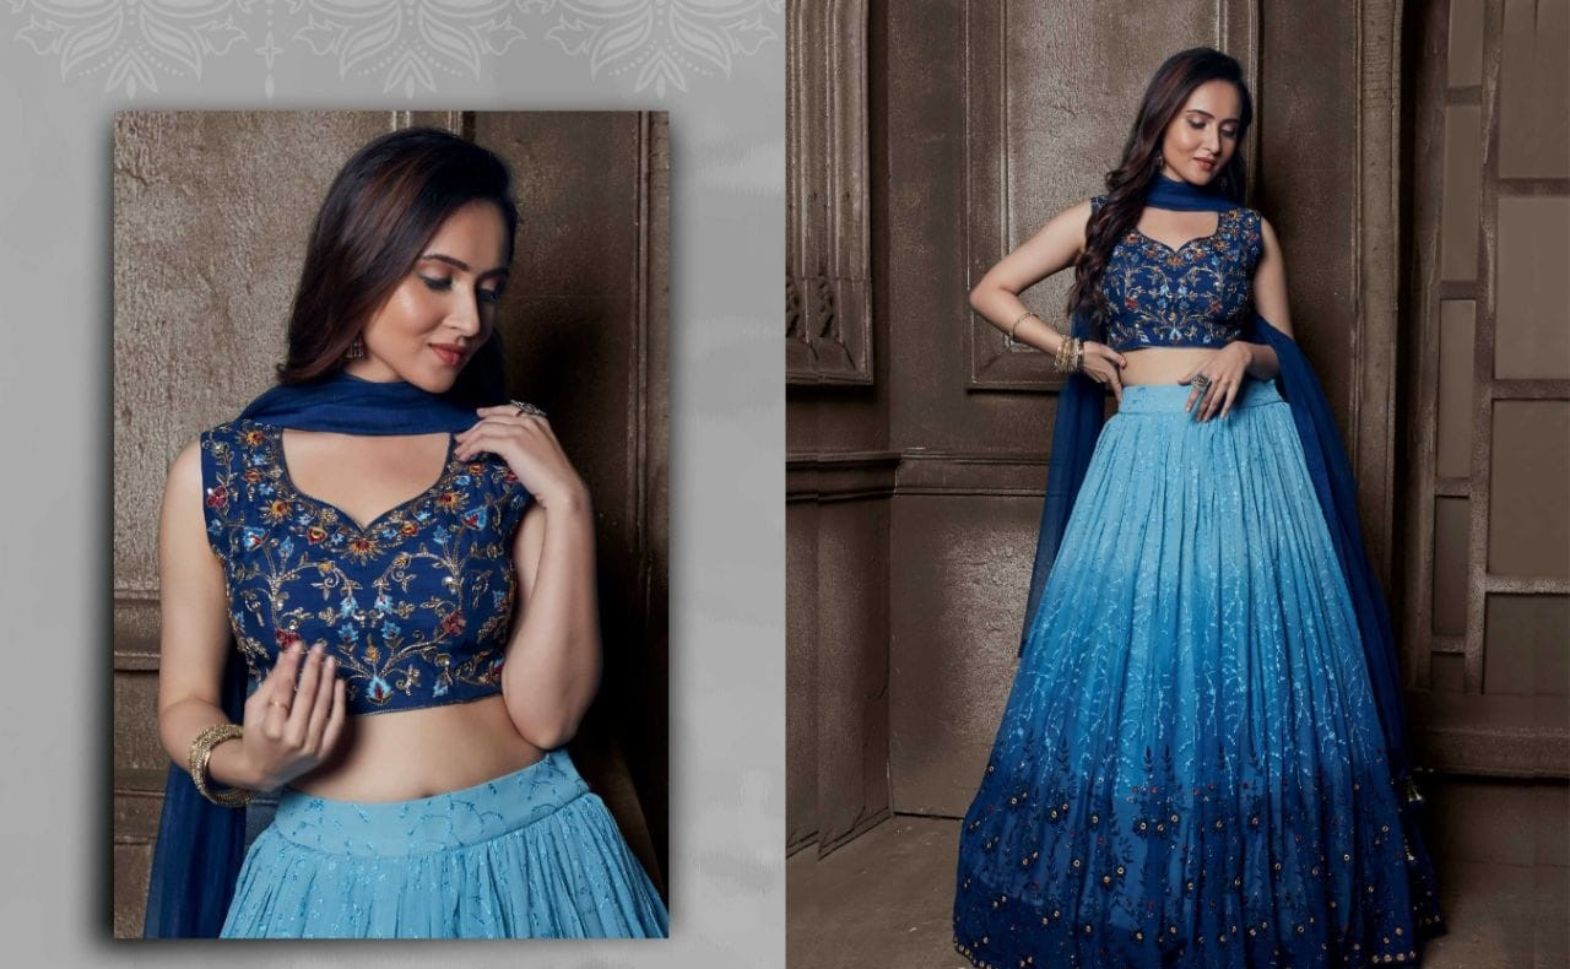 Royal Blue Velvet Maxi + Fascinator | Combination dresses, Royal clothes, Blue  color combinations